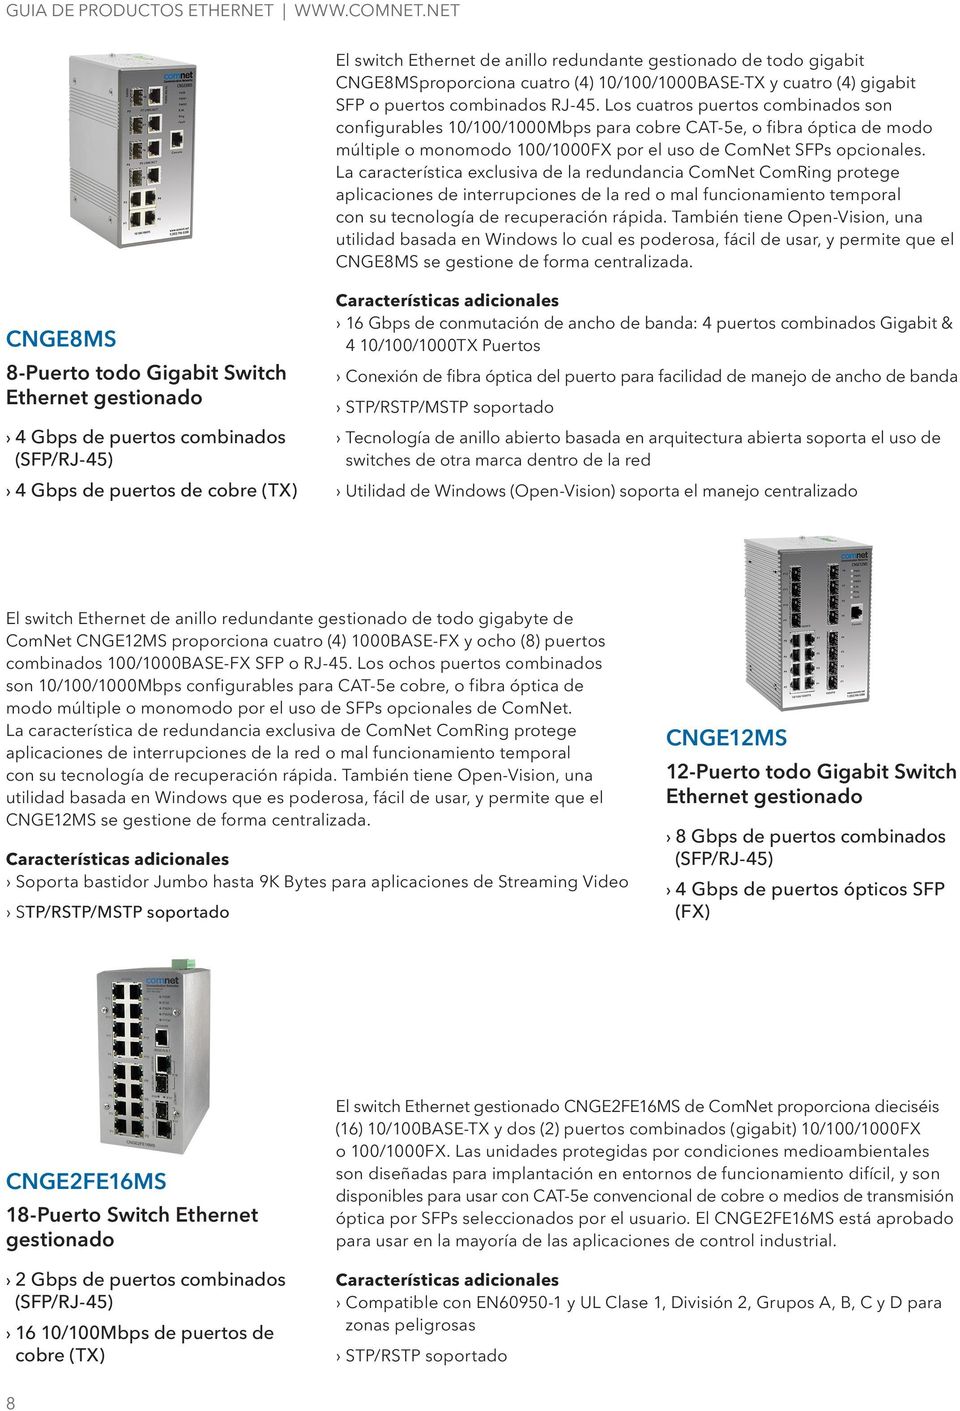 Los cuatros puertos combinados son configurables 10/100/1000Mbps para cobre CAT-5e, o fibra óptica de modo múltiple o monomodo 100/1000FX por el uso de ComNet SFPs opcionales.